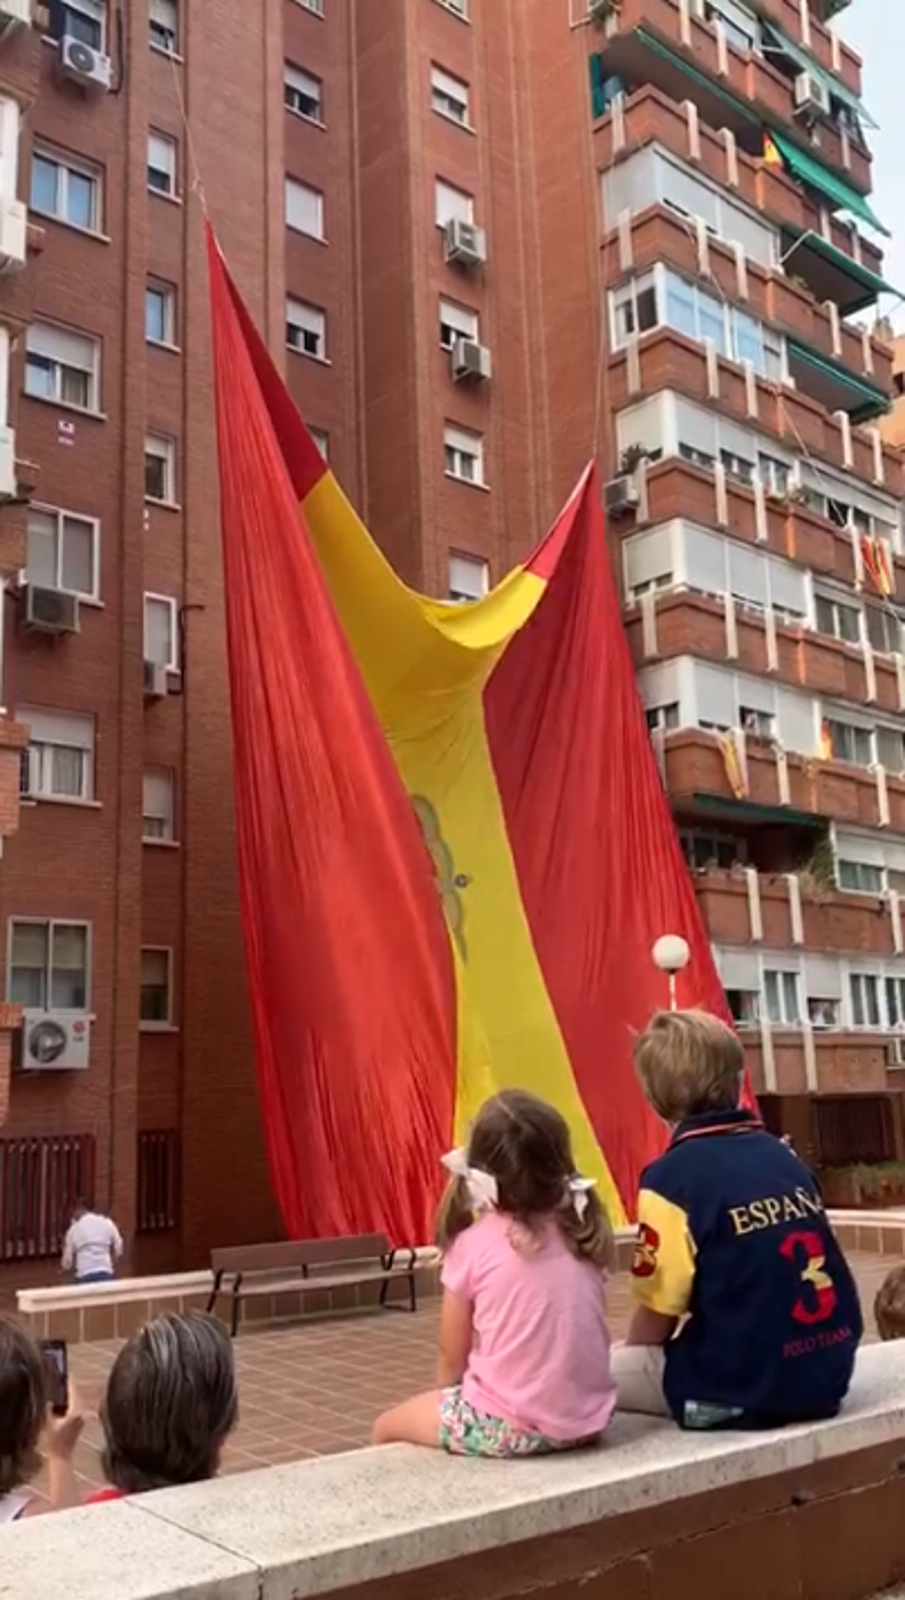 FOTOGRAFÍA. ESPAÑA, 30.05.2020. Día de las Fuerzas Armadas. Un grupo de vecinos celebra el Día de las Fuerzas Armadas izando una gigante bandera. Ñ Pueblo (11)